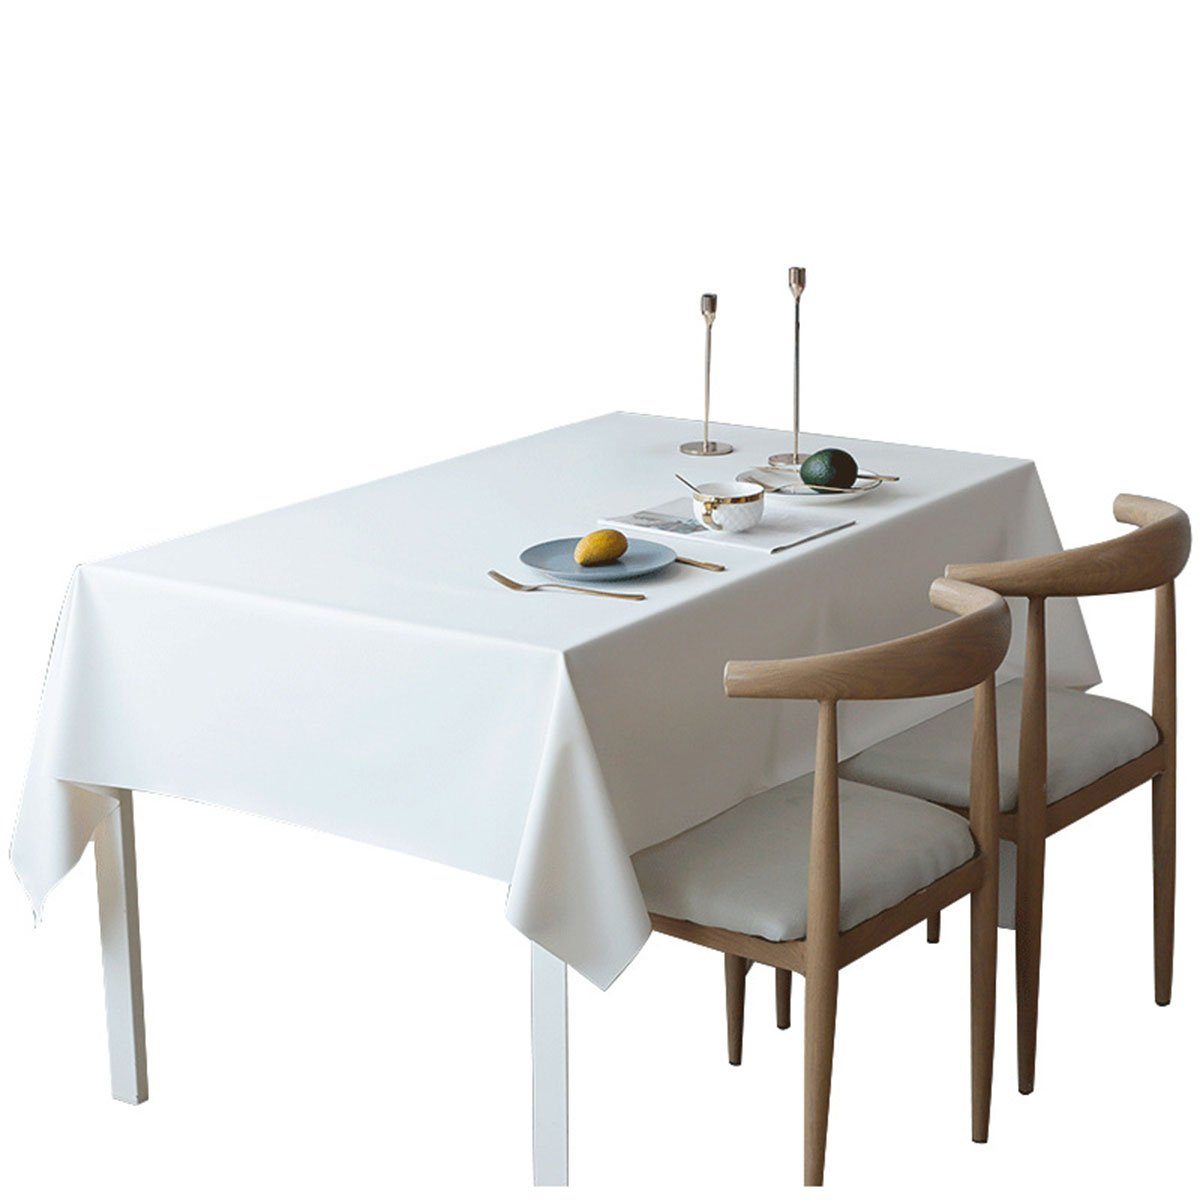 CTGtree Tischdecke Tischdecke, wasser- und ölbeständig, rechteckige Tischdecke Weiß